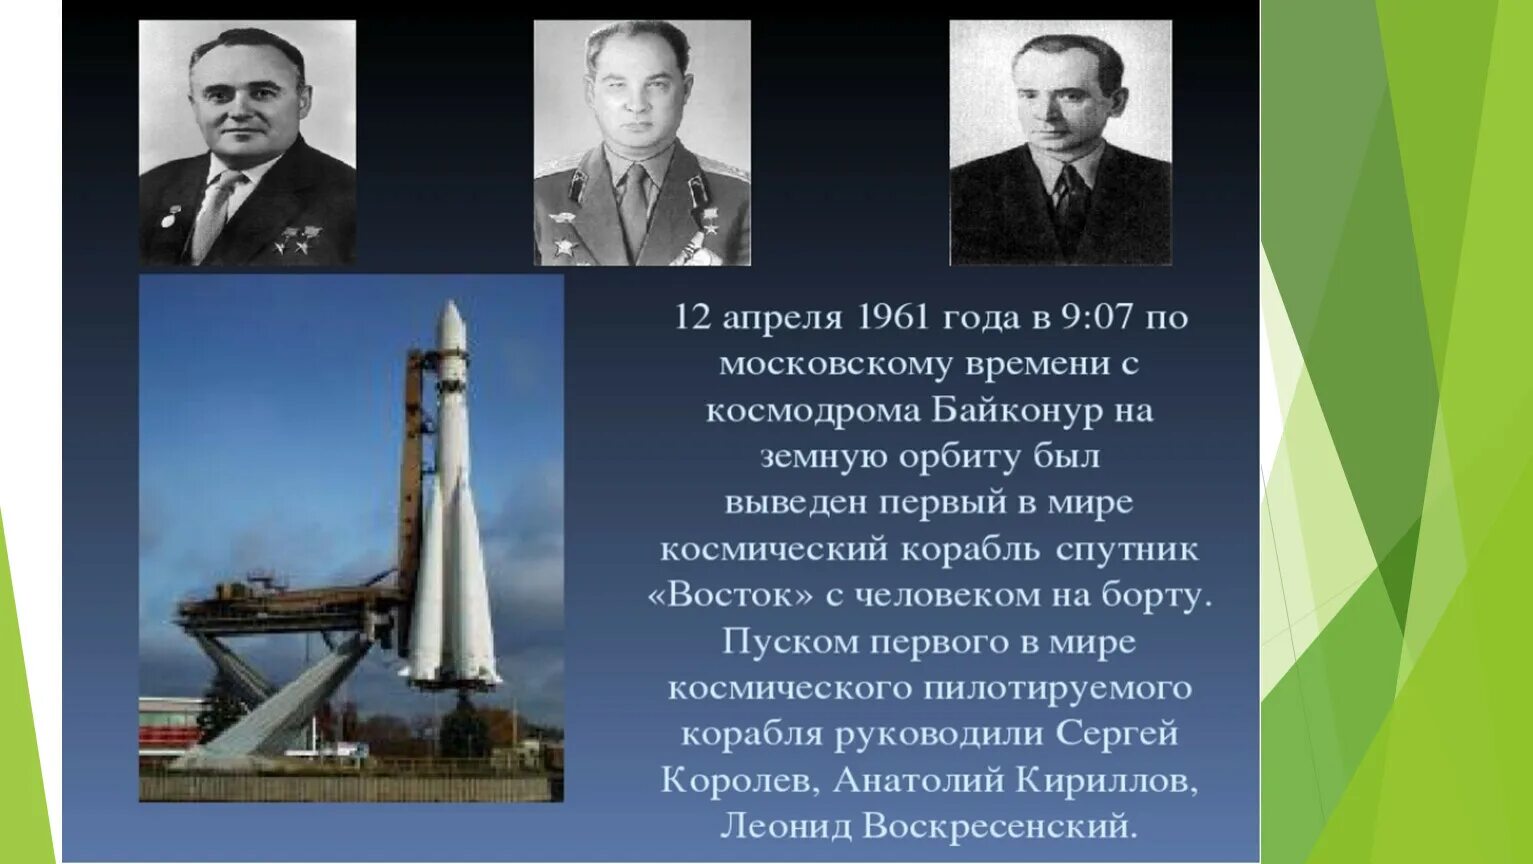 Создатель первого космического корабля. Королев косми́ческий кора́бль «Восто́к-1».